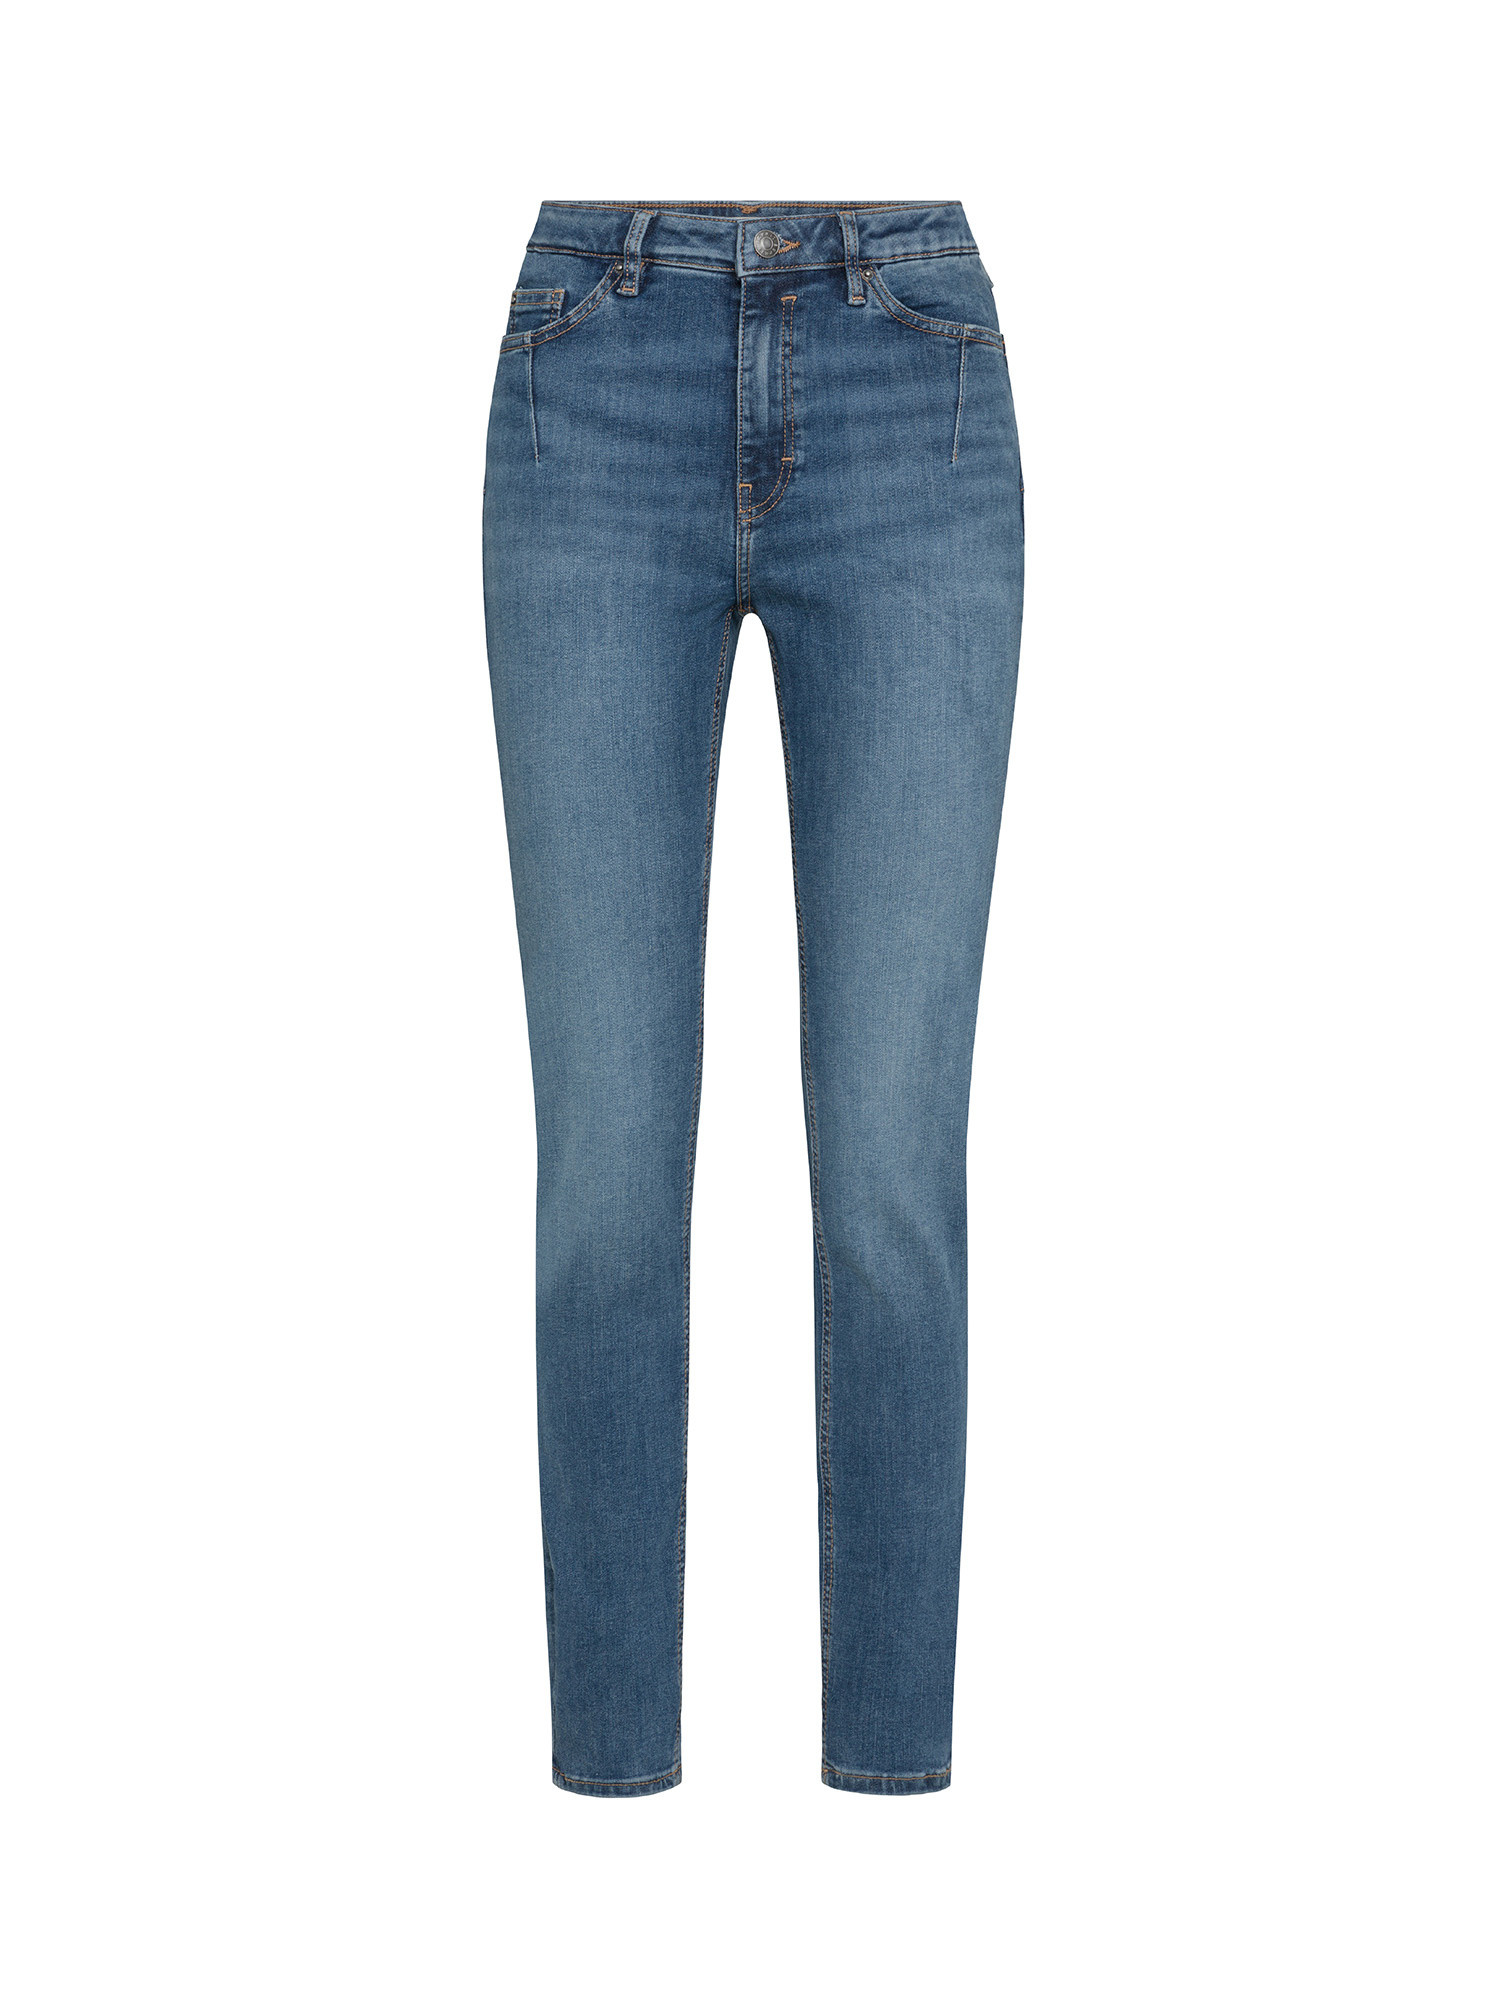 Esprit - Five pocket skinny jeans, Denim, large image number 0